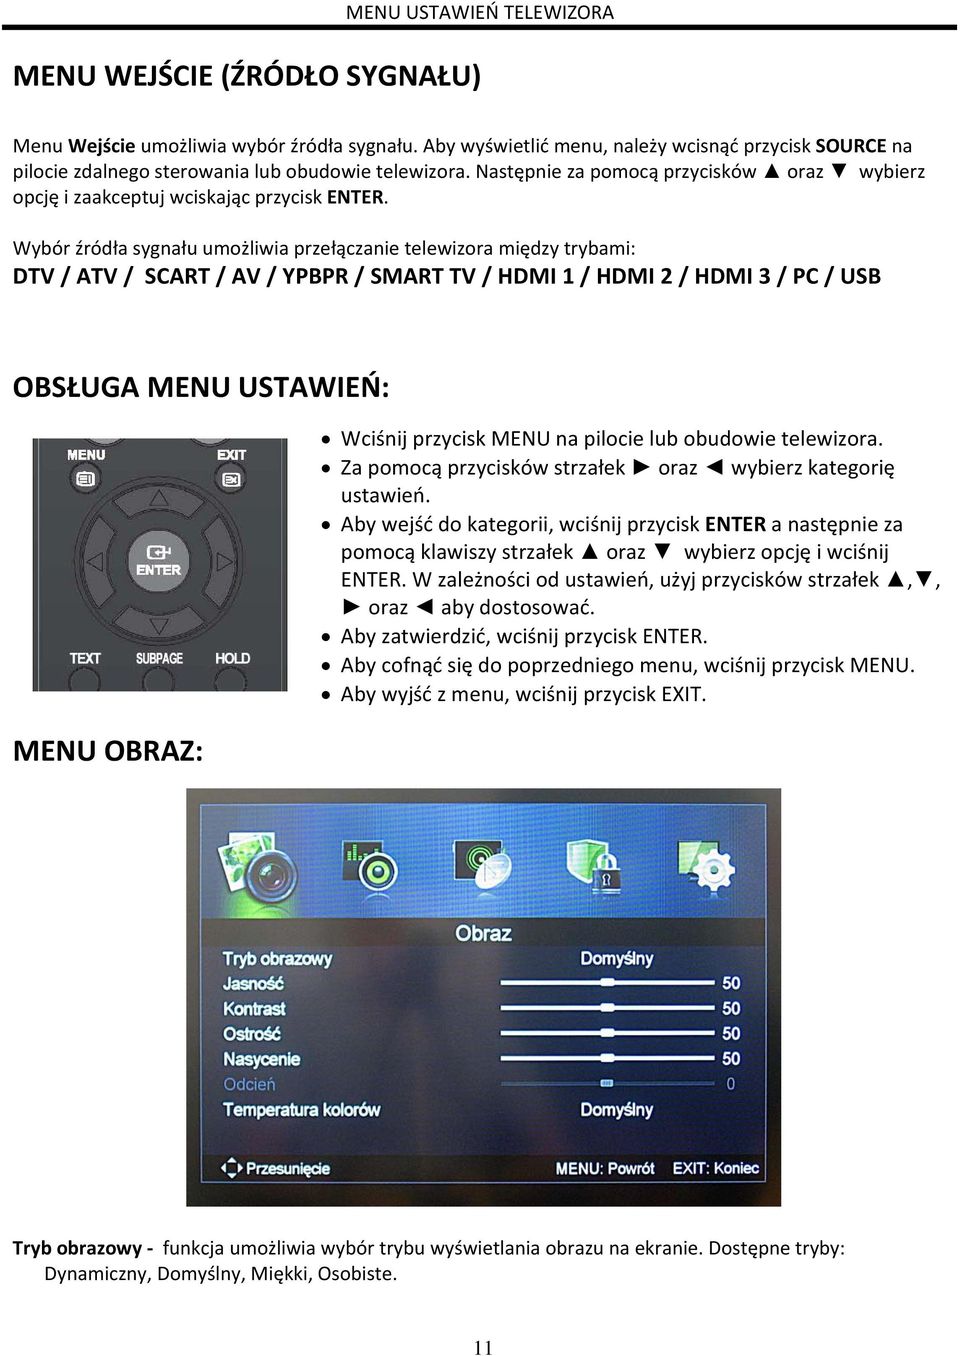 Wybór źródła sygnału umożliwia przełączanie telewizora między trybami: DTV / ATV / SCART / AV / YPBPR / SMART TV / HDMI 1 / HDMI 2 / HDMI 3 / PC / USB OBSŁUGA MENU USTAWIEŃ: MENU OBRAZ: Wciśnij